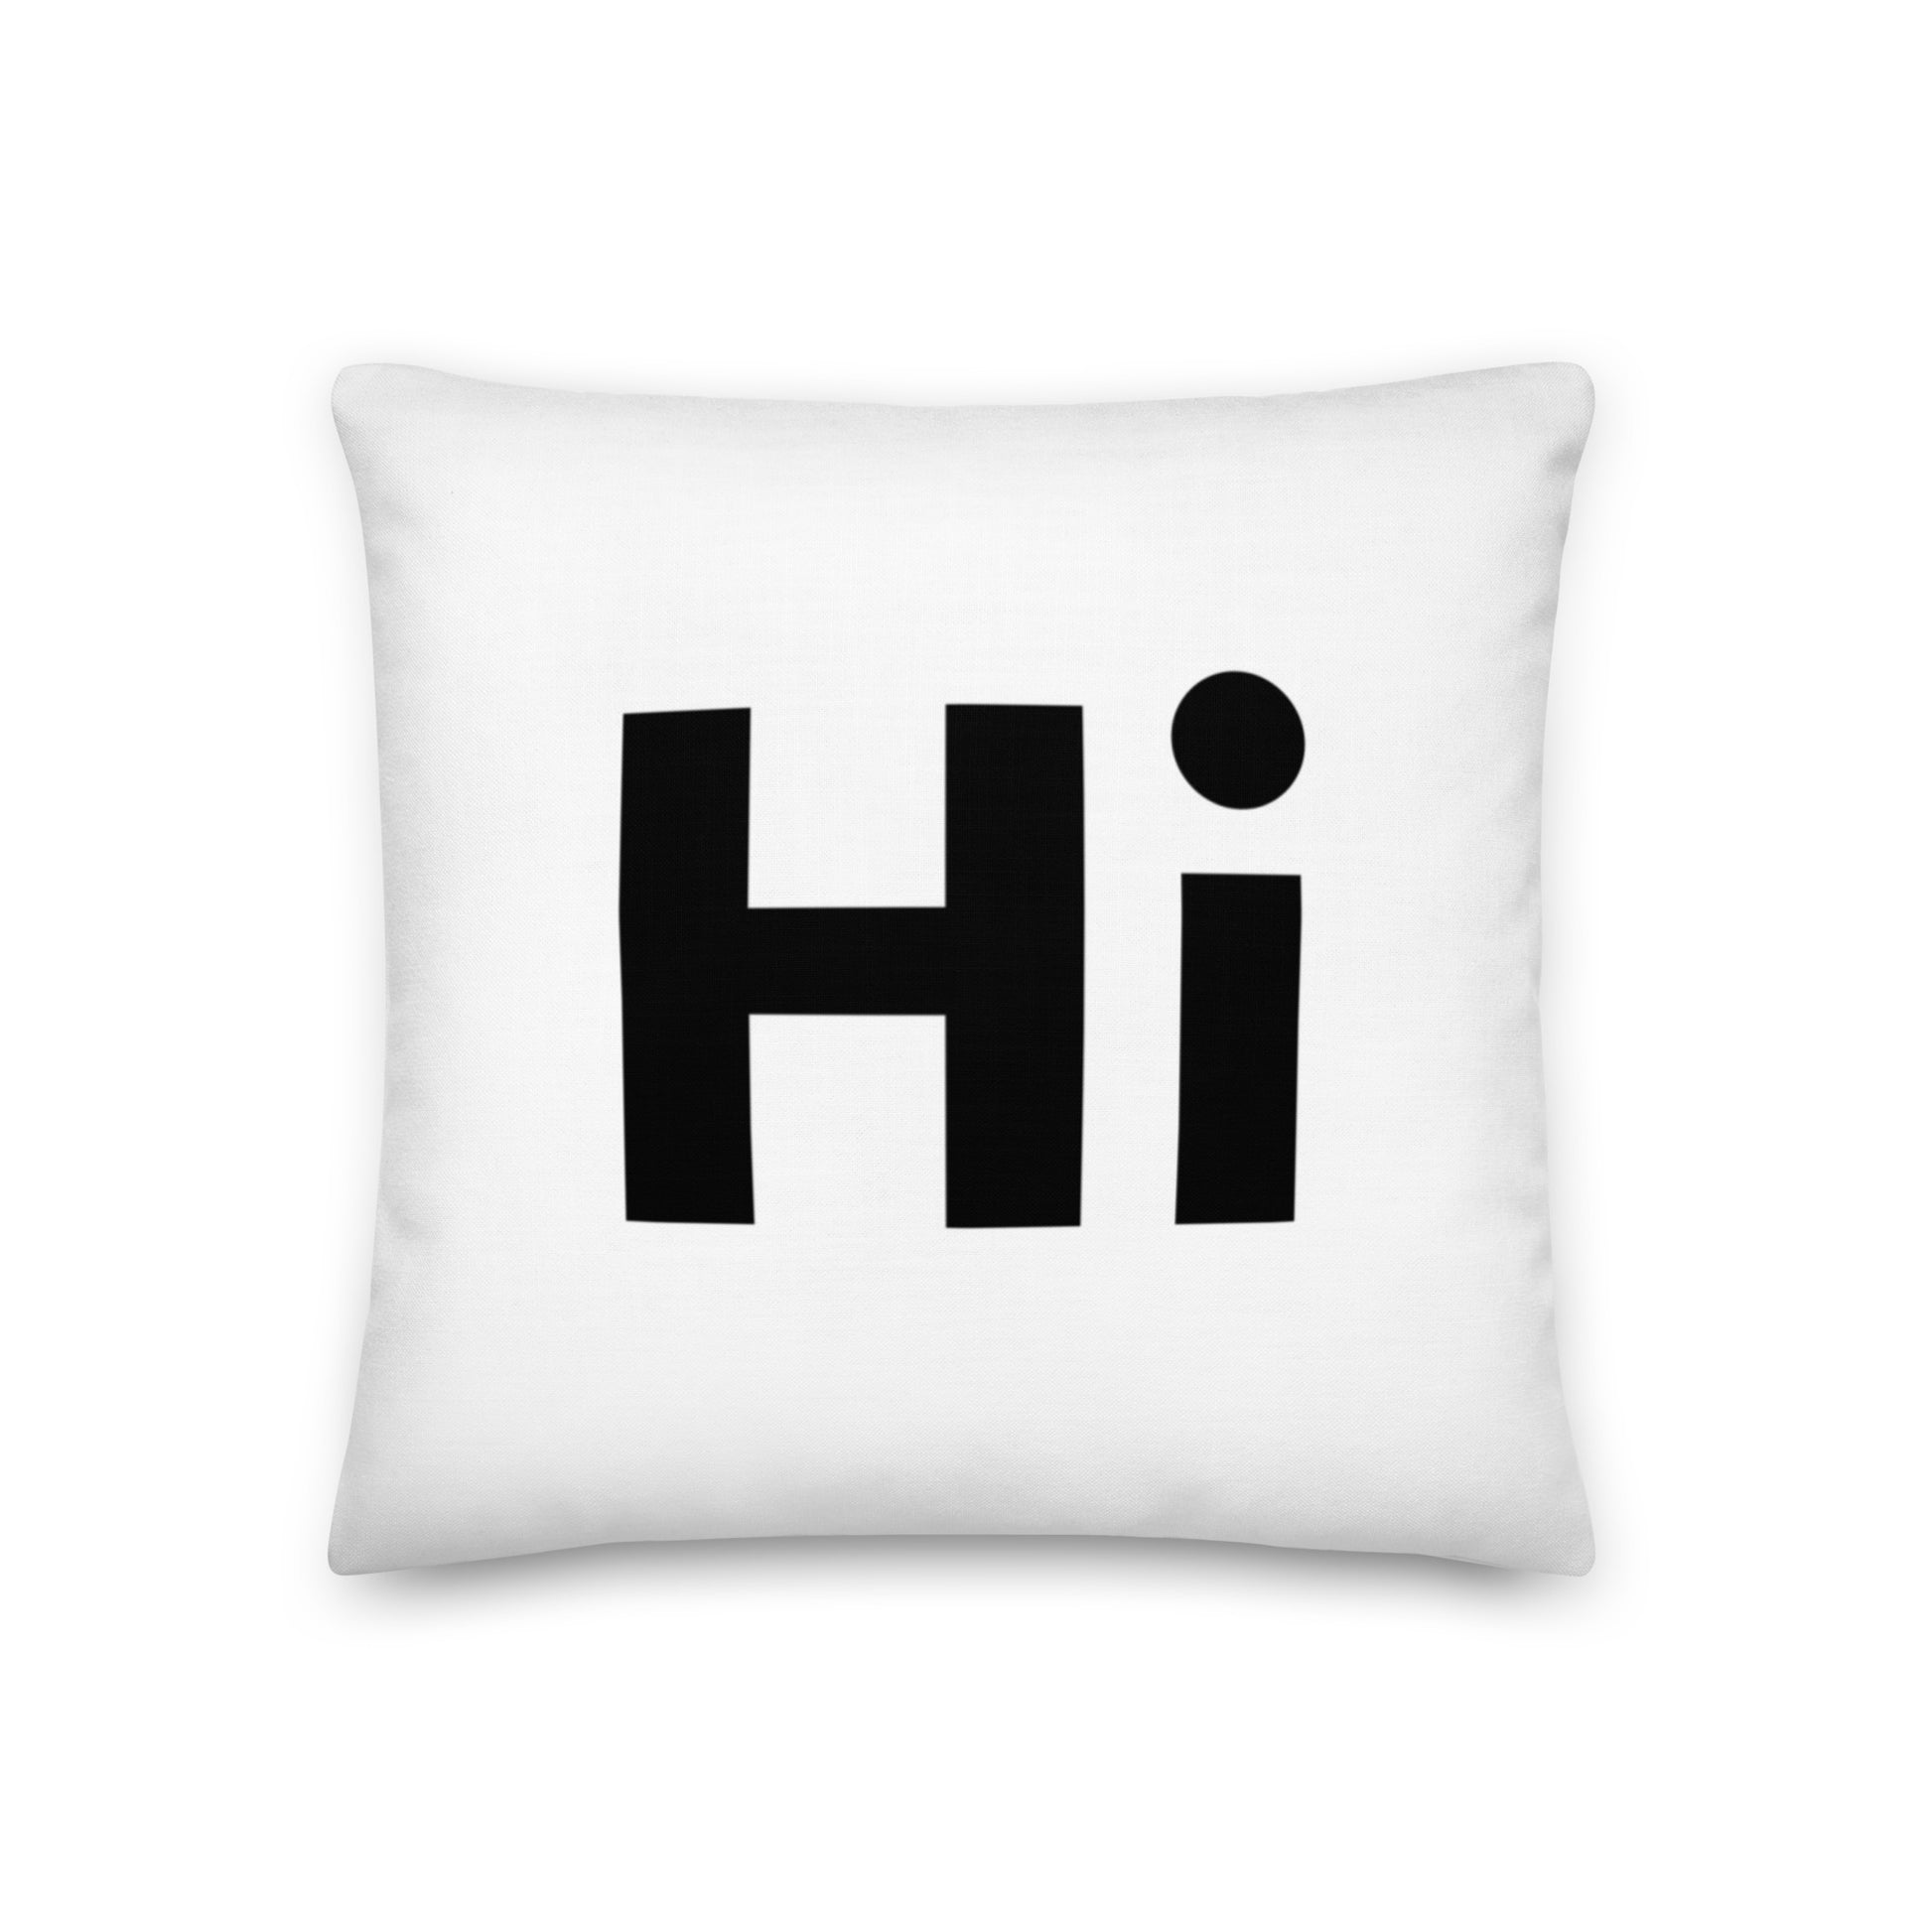 Moai Emoji Pillows & Cushions for Sale